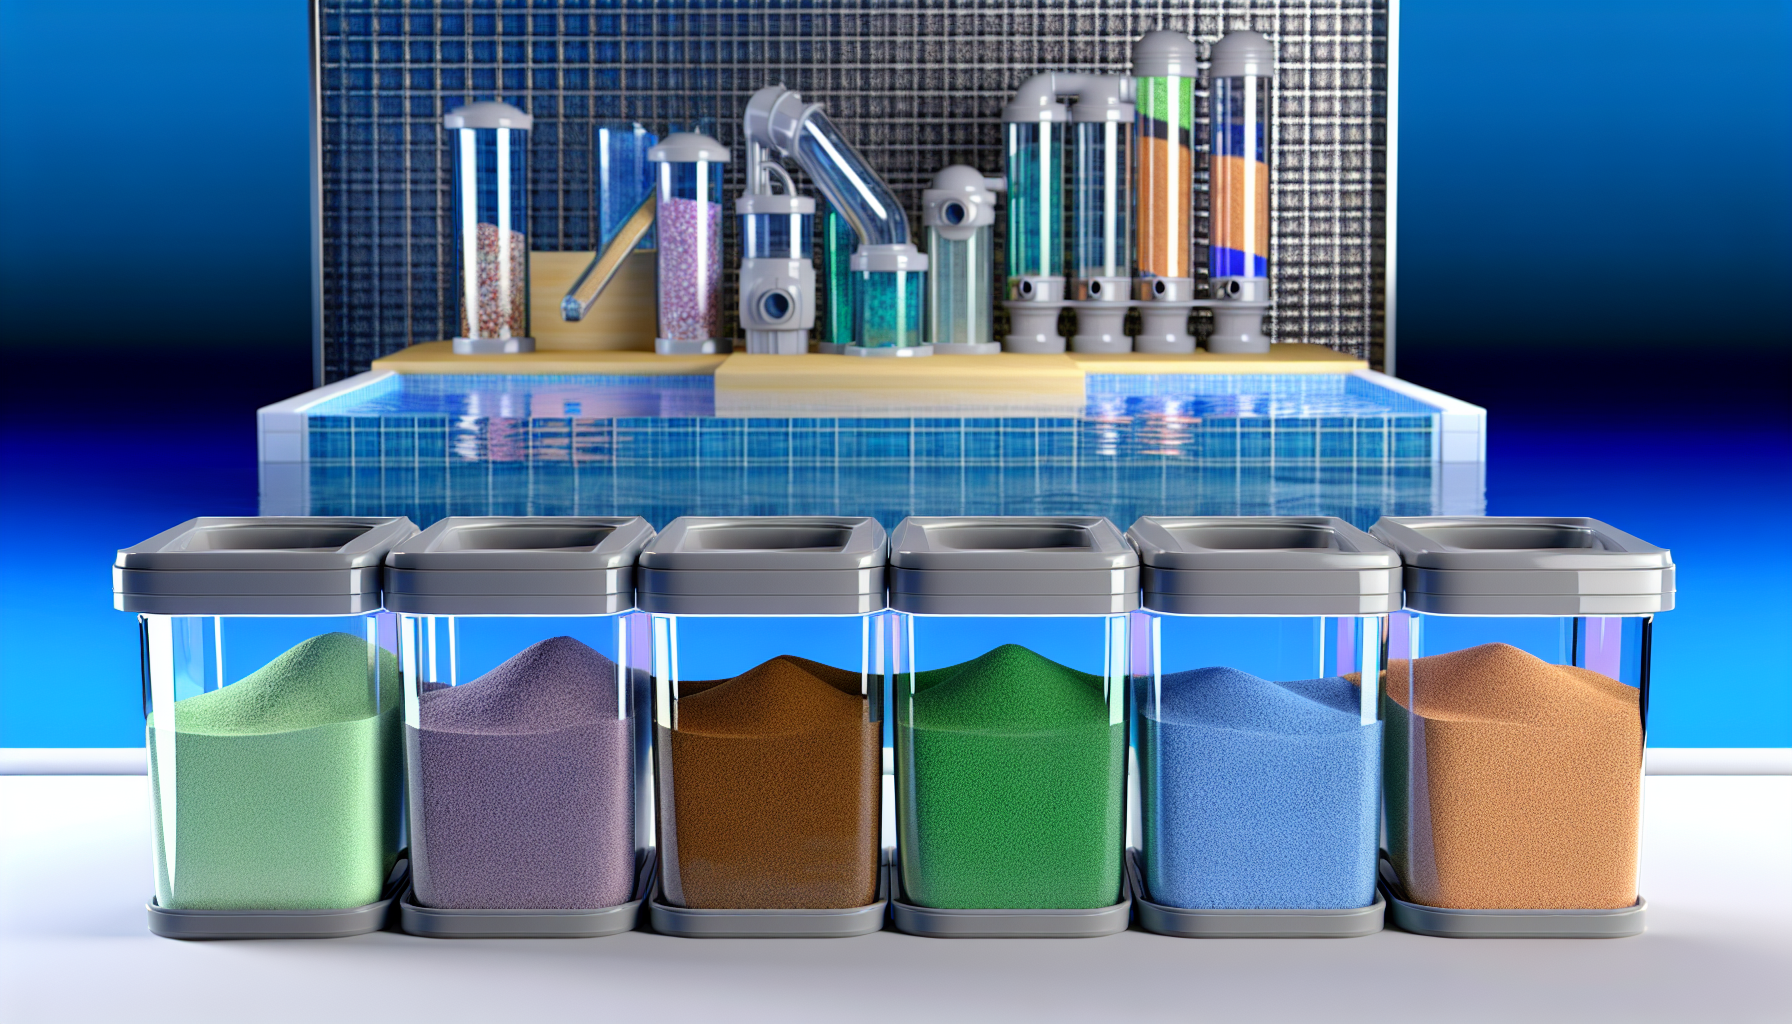 Ein futuristisches Labor mit verschiedenen farbigen Substanzen in Behältern im Vordergrund und automatisierten Apparaten im Hintergrund.